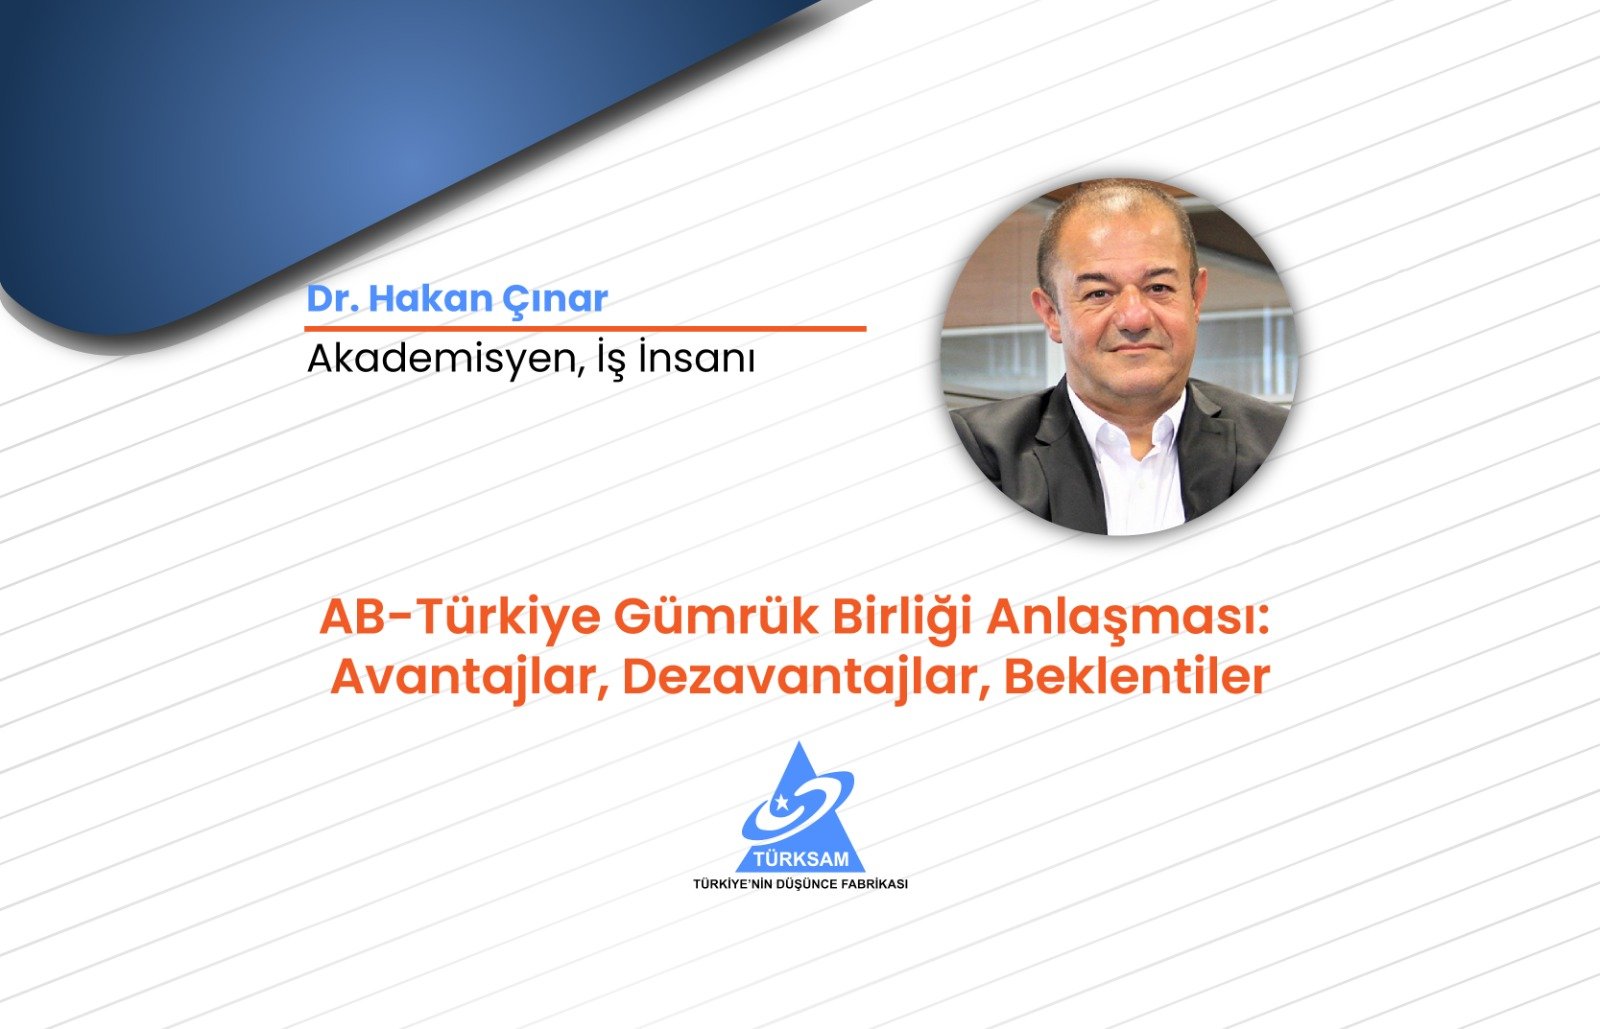 AB-Türkiye Gümrük Birliği Anlaşması: Avantajlar, Dezavantajlar, Beklentiler